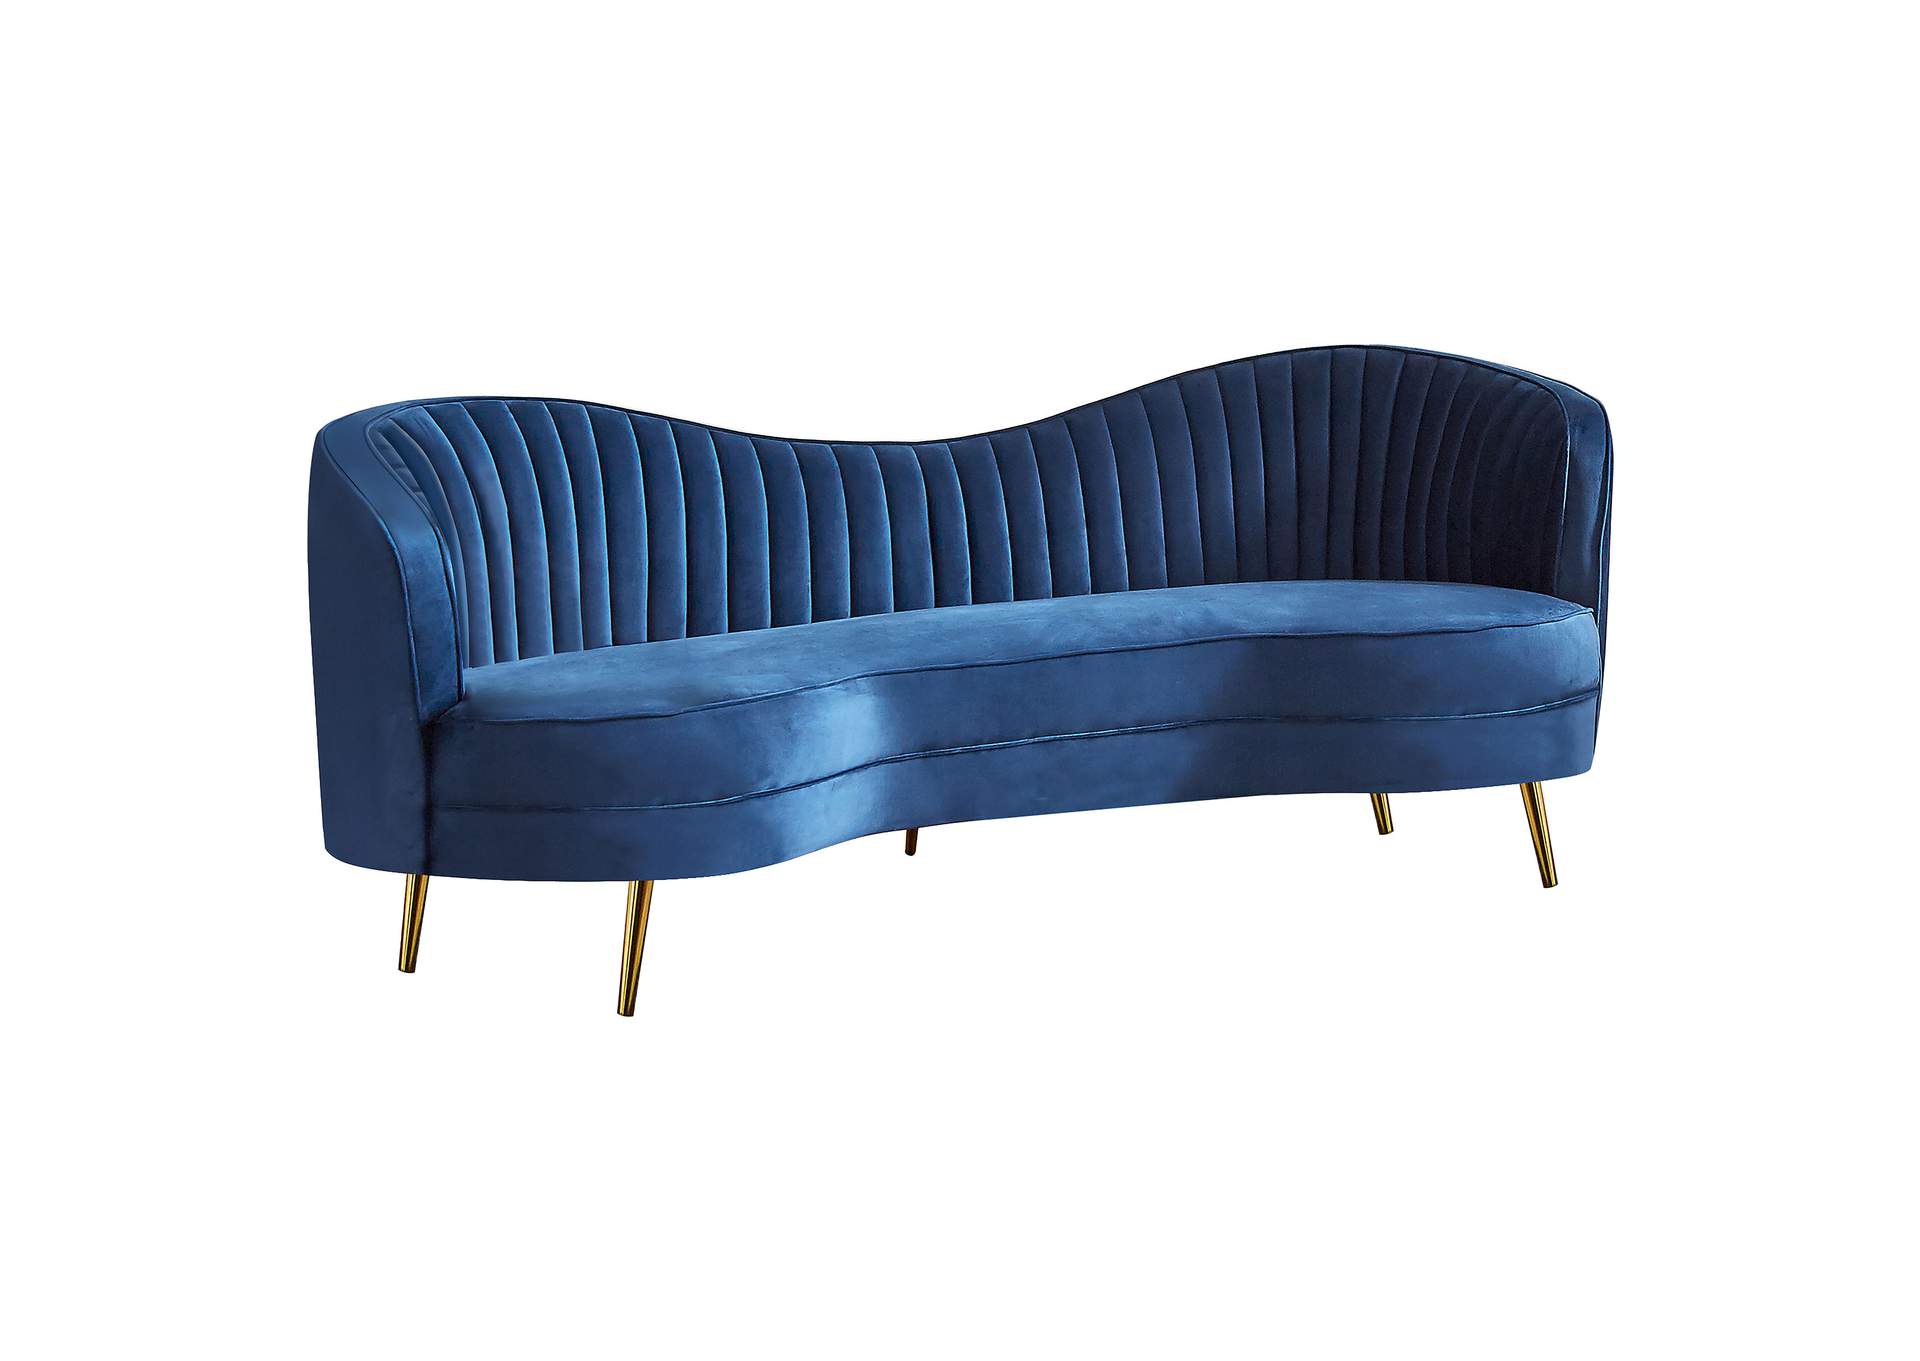 Sophia Upholstered Camel Back Sofa Blue,Coaster Furniture